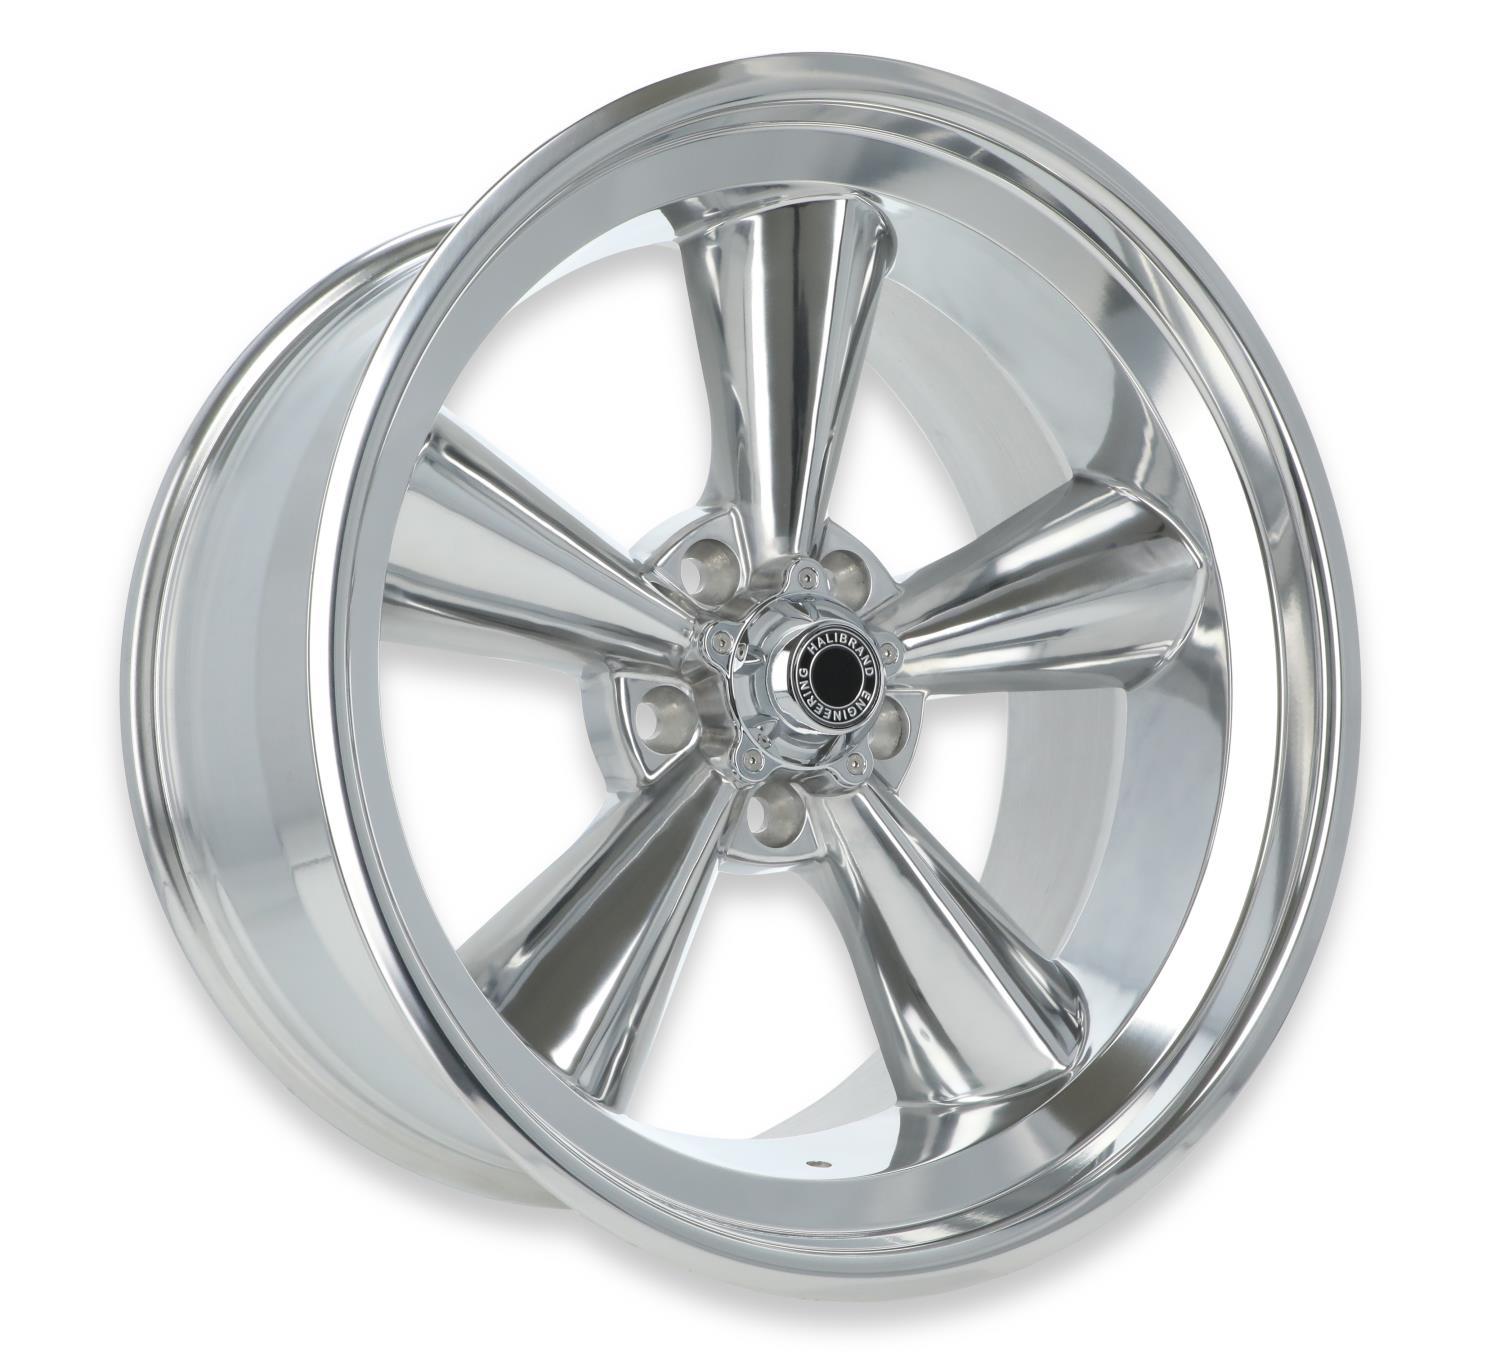 5 Spoke Rear Wheel, Size: 20x10